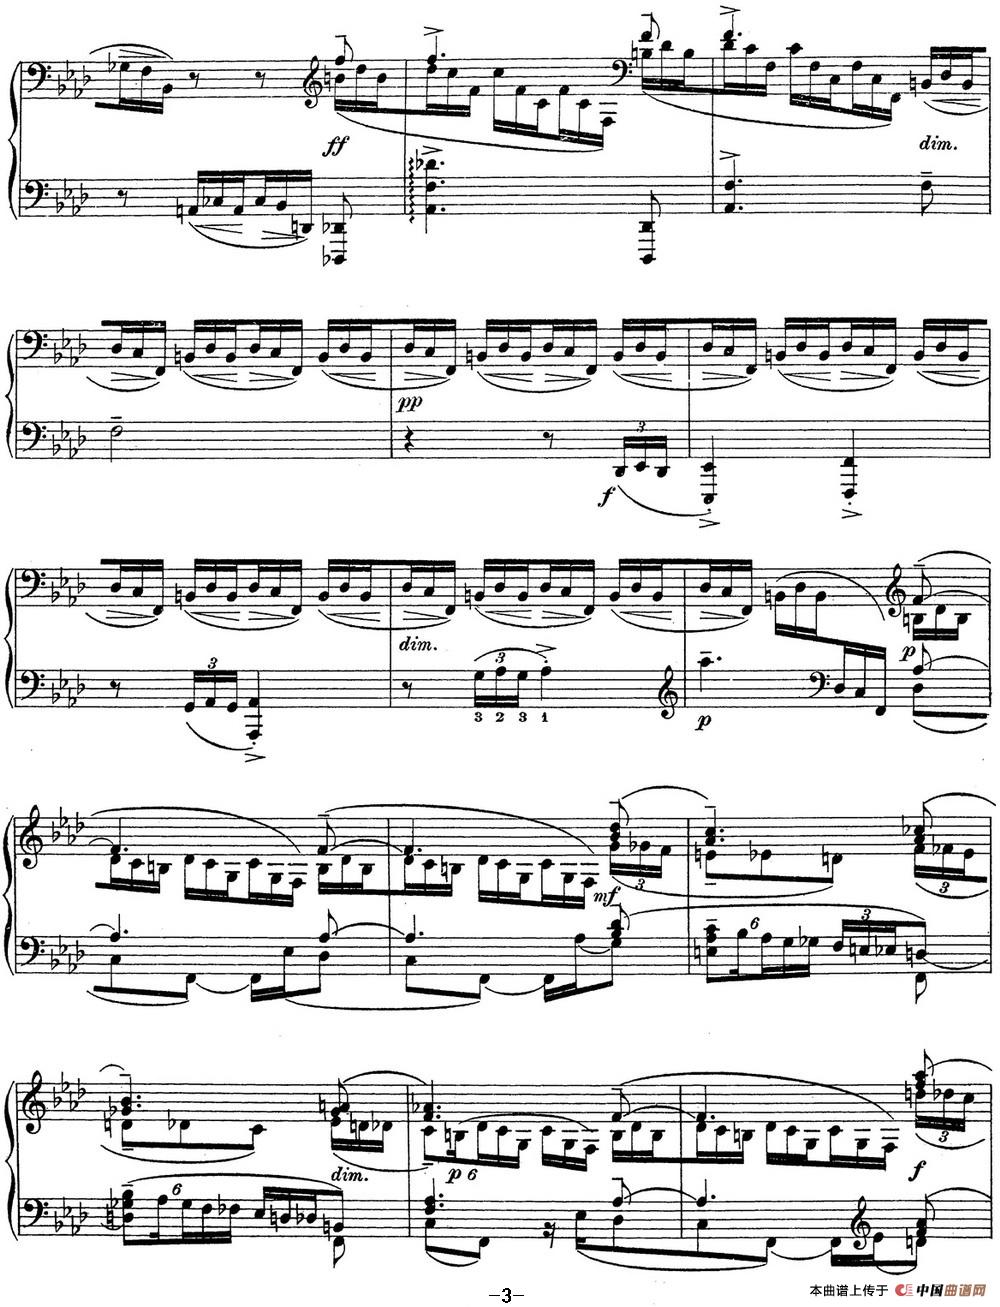 《拉赫玛尼诺夫 钢琴前奏曲17 F小调 Op.32 No.6》钢琴曲谱图分享